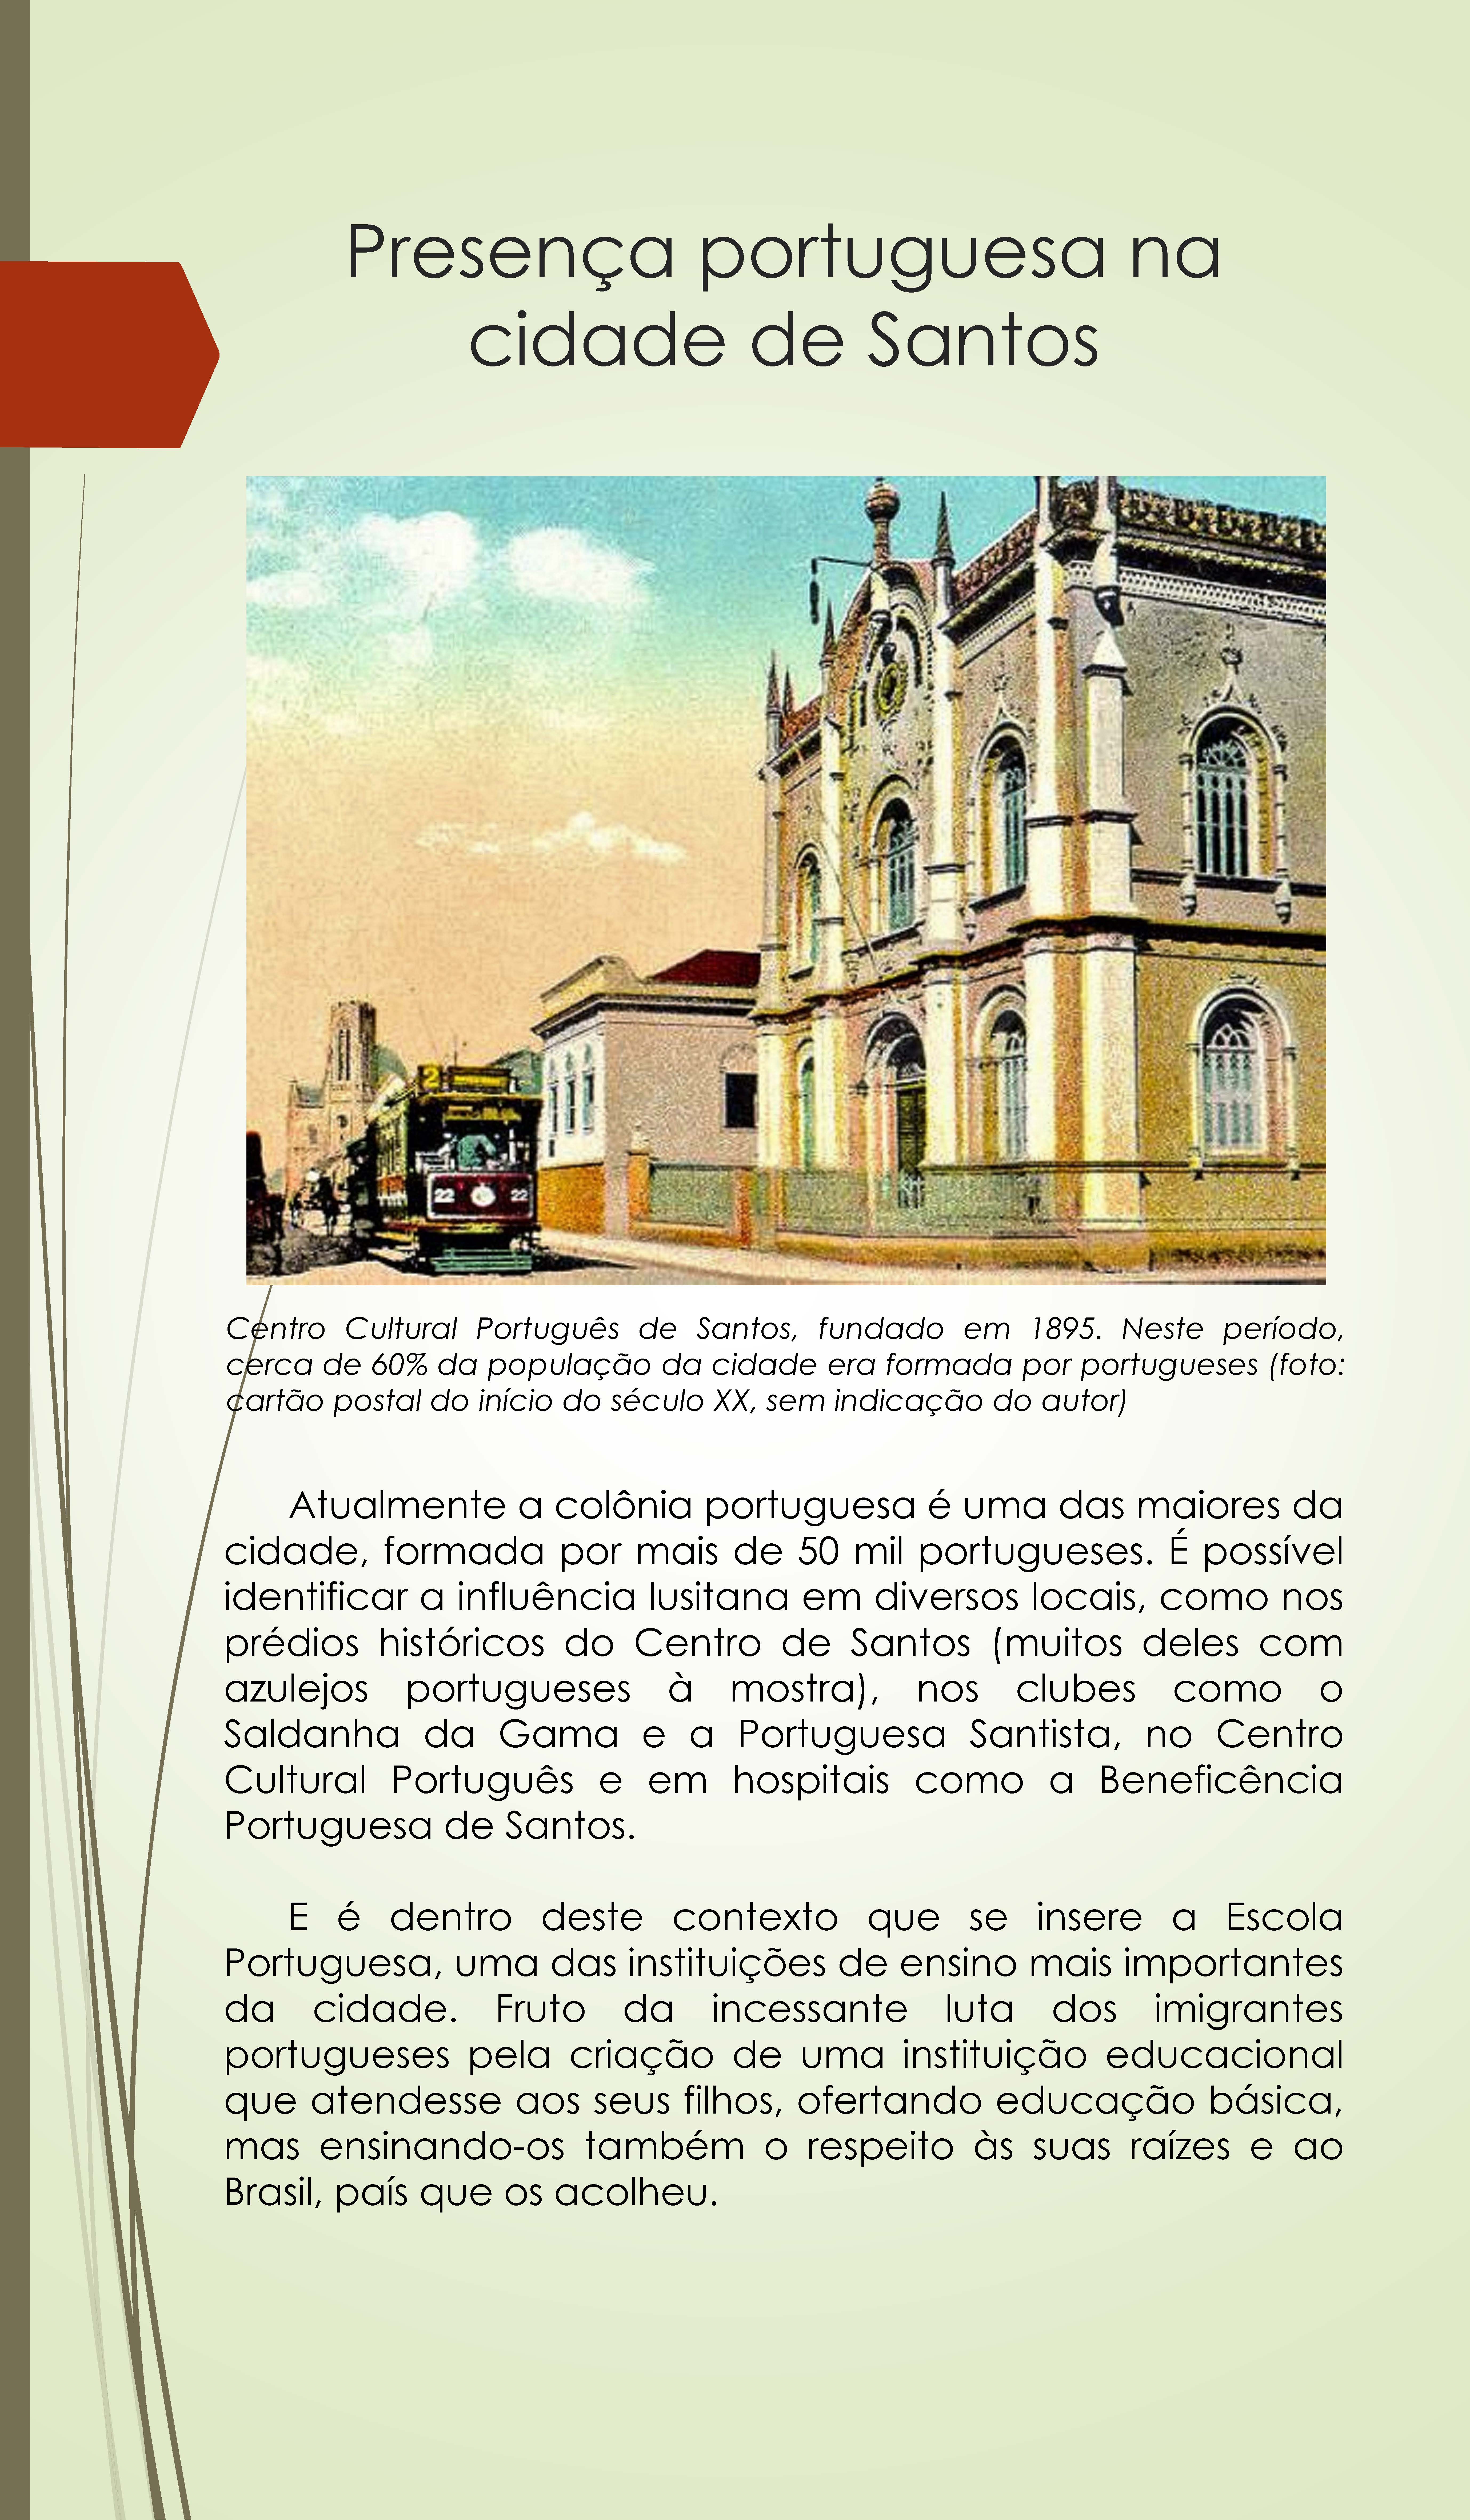 expo_escola_portugesa_100_anos_pdf_pgina_03.jpg